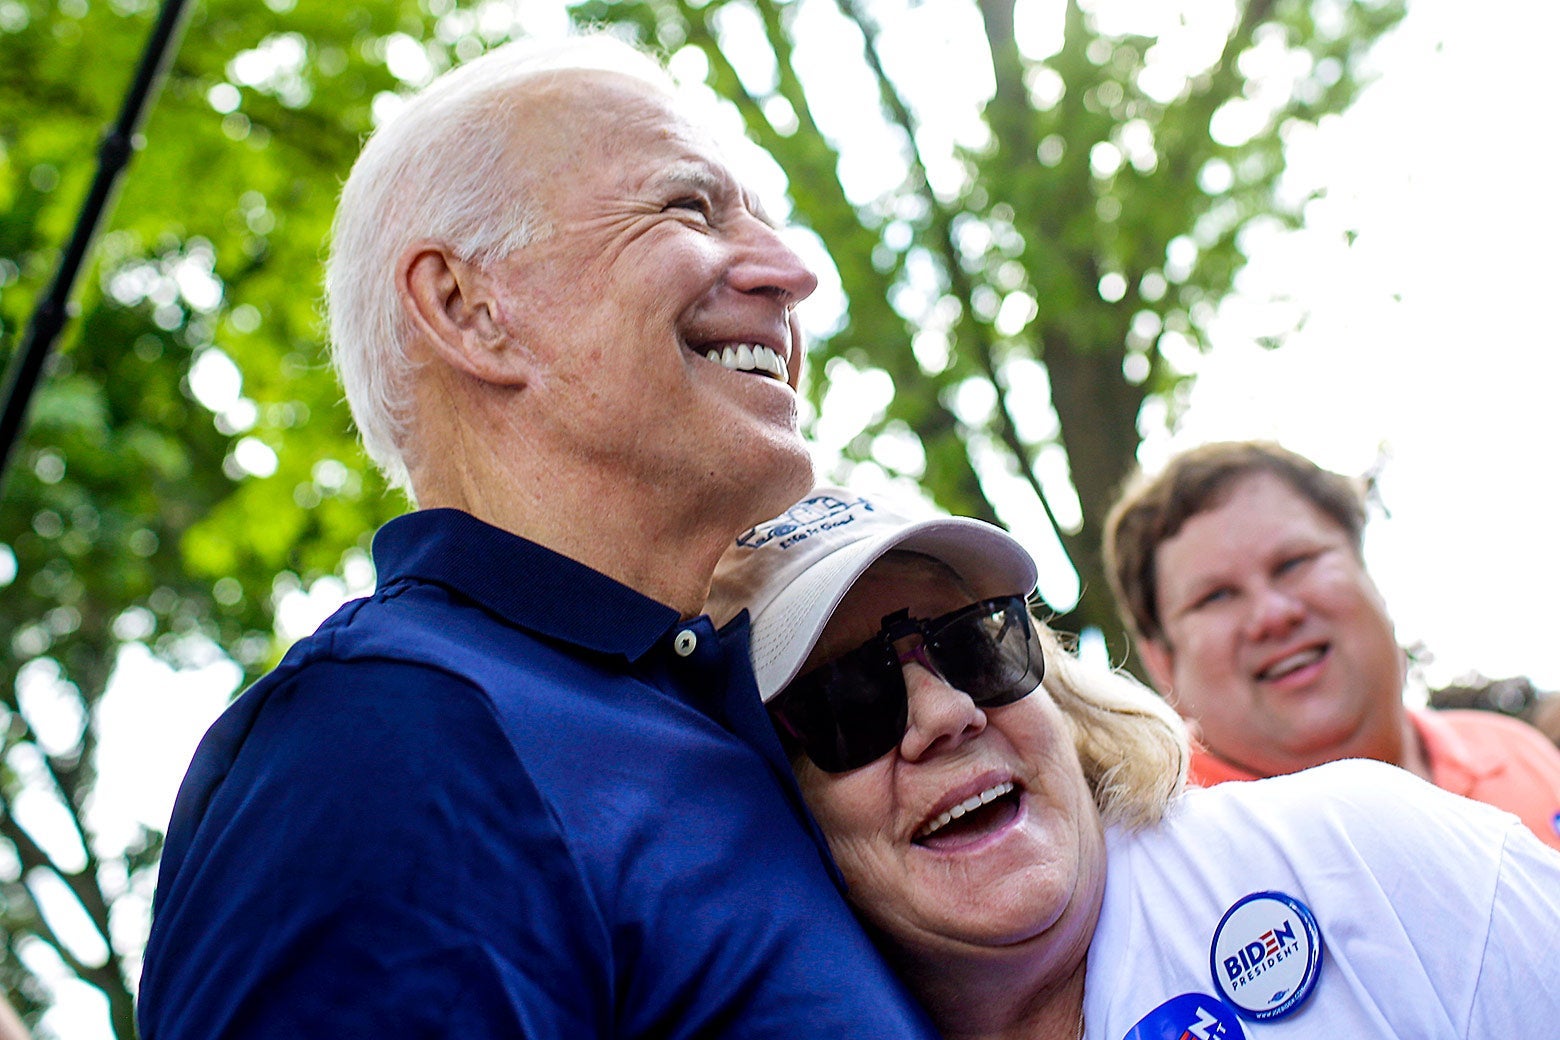 Biden hugging a smiling older woman outside